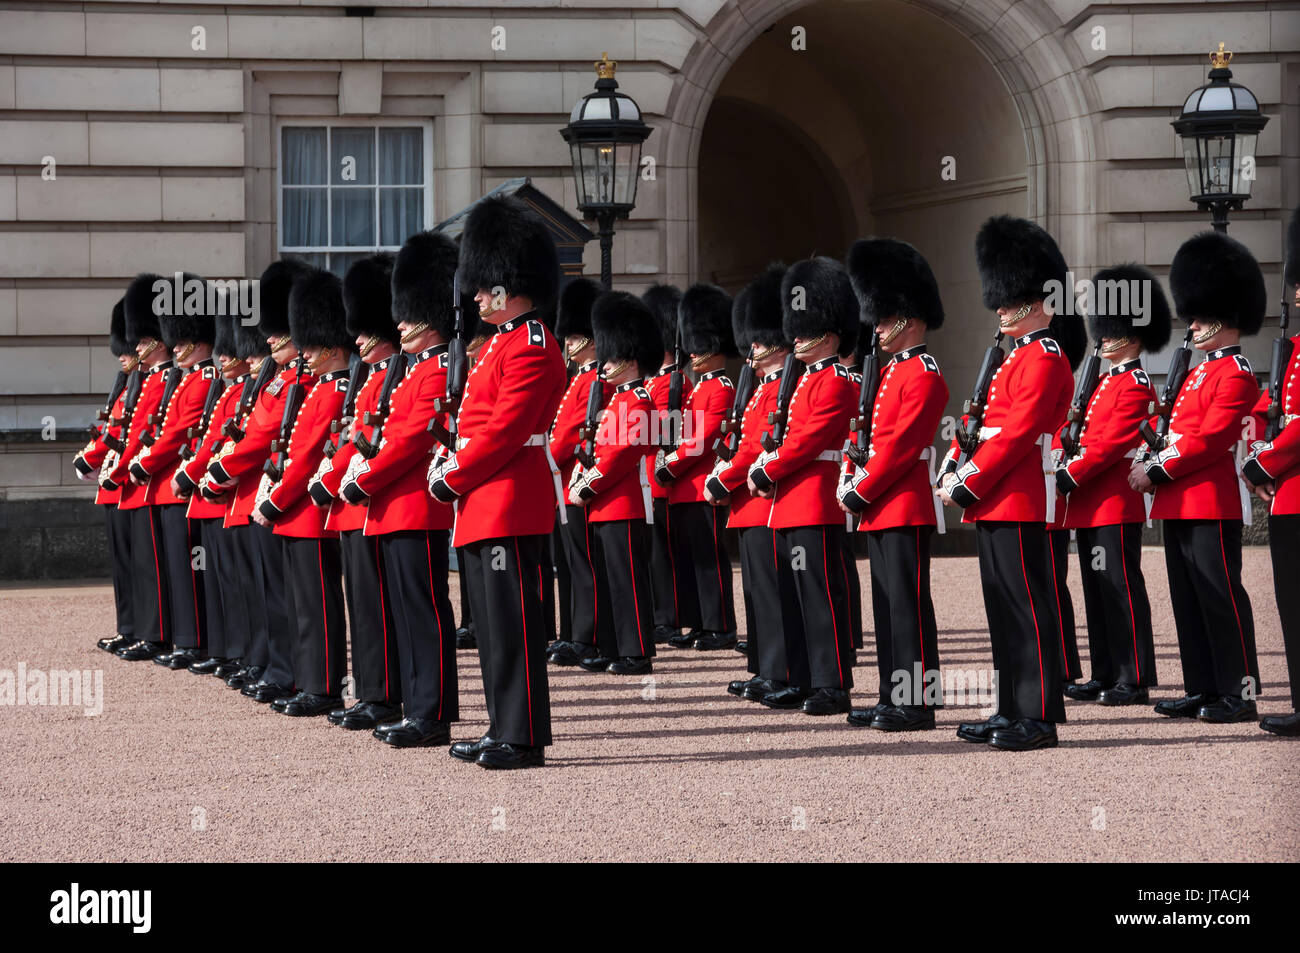 Coldstream Guards défilent lors relève de la garde, le palais de Buckingham, Londres, Angleterre, Royaume-Uni, Europe Banque D'Images